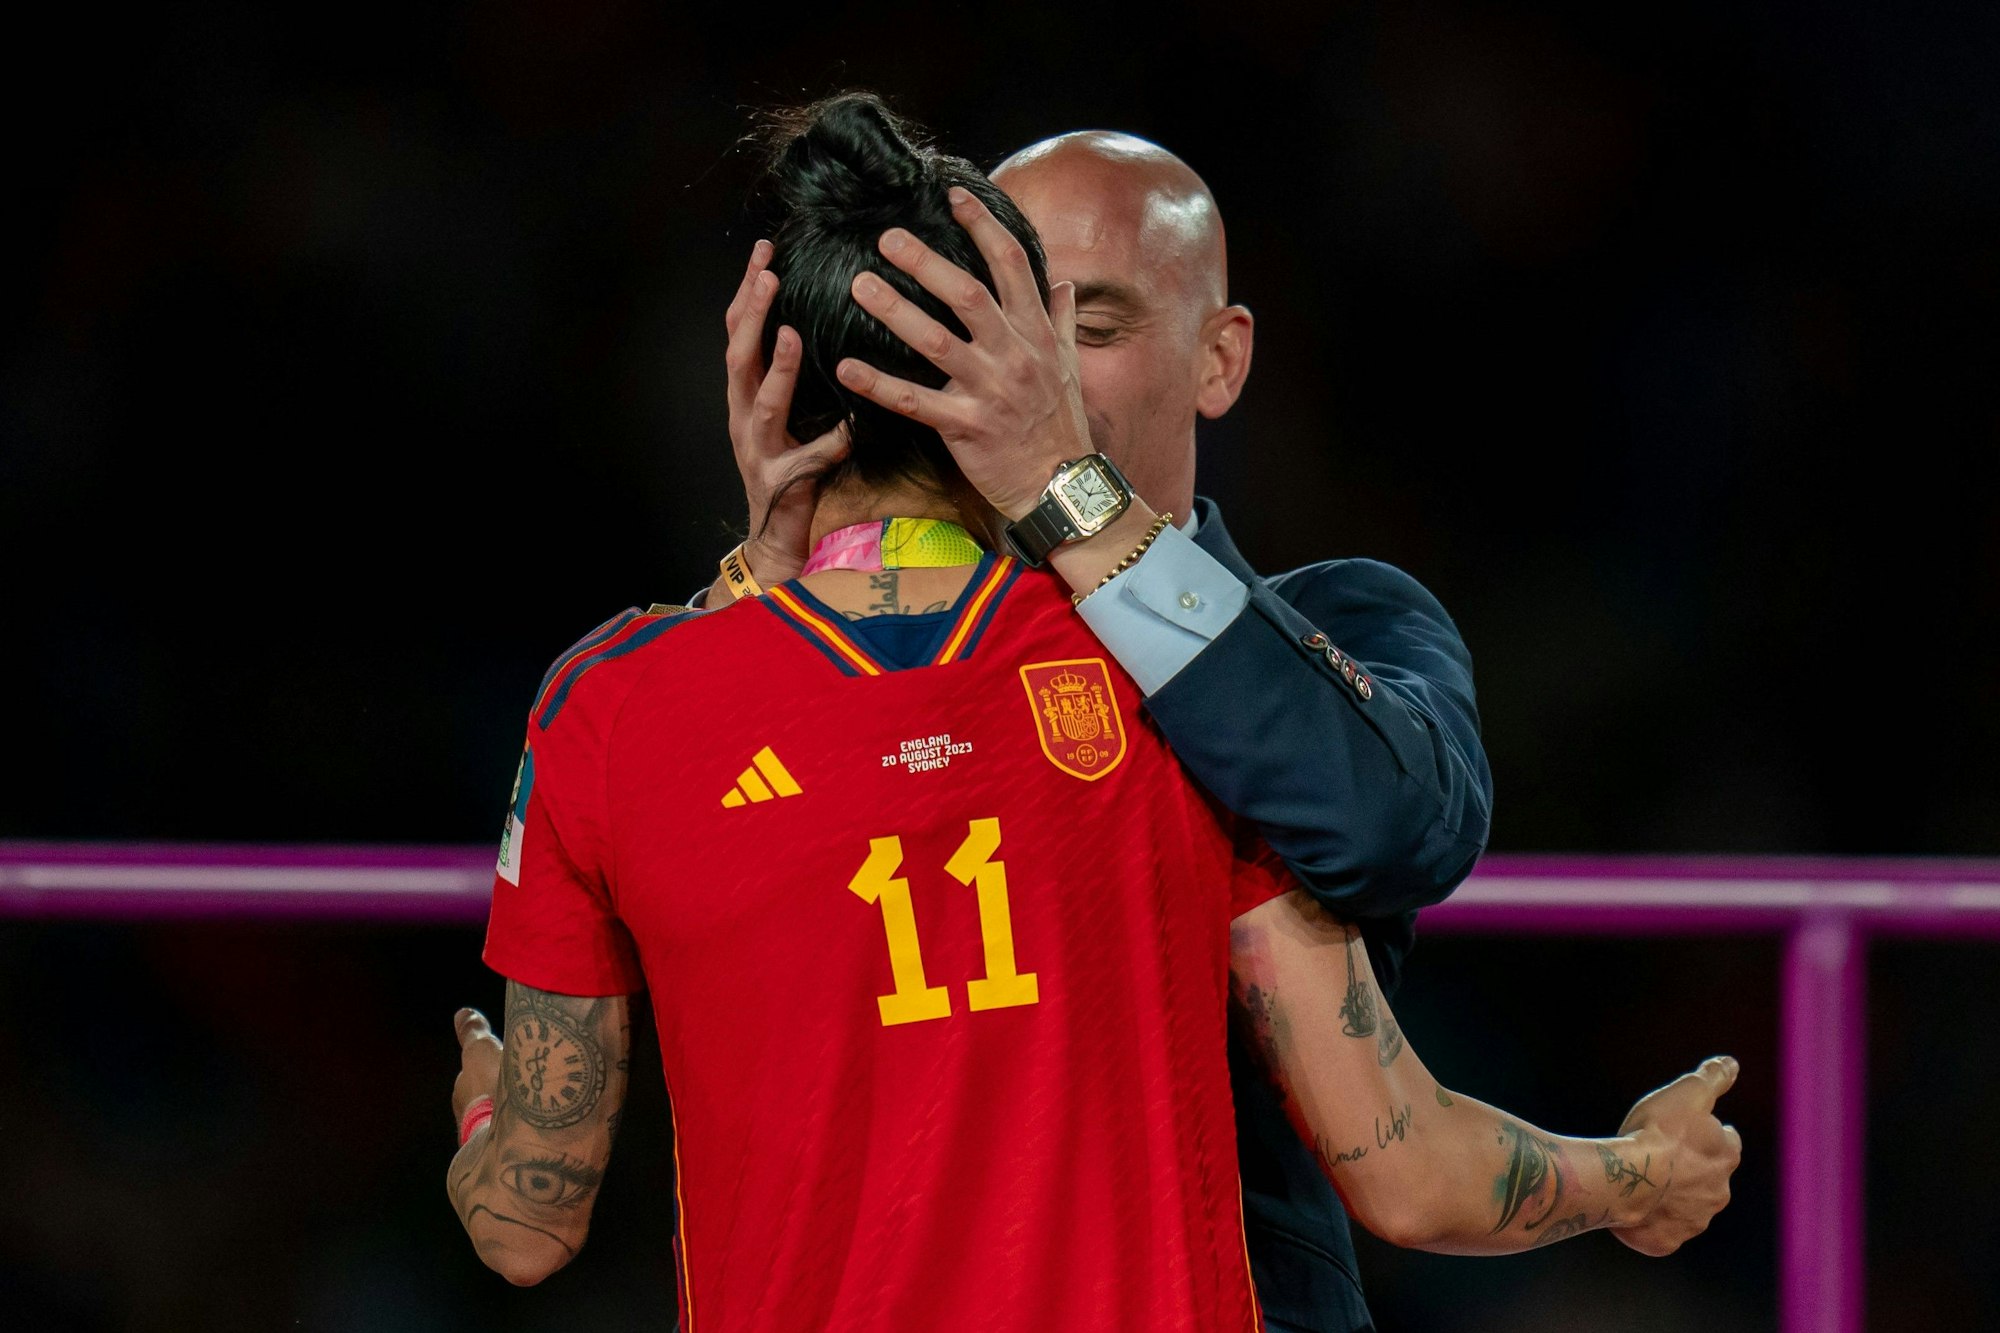 Der Kuss, der um die Welt geht und den WM-Sieg der Spanierinnen überschattet: Luis Rubiales küsst die spanische Rekordspielerin Jennifer Hermoso bei der Siegerehrung.